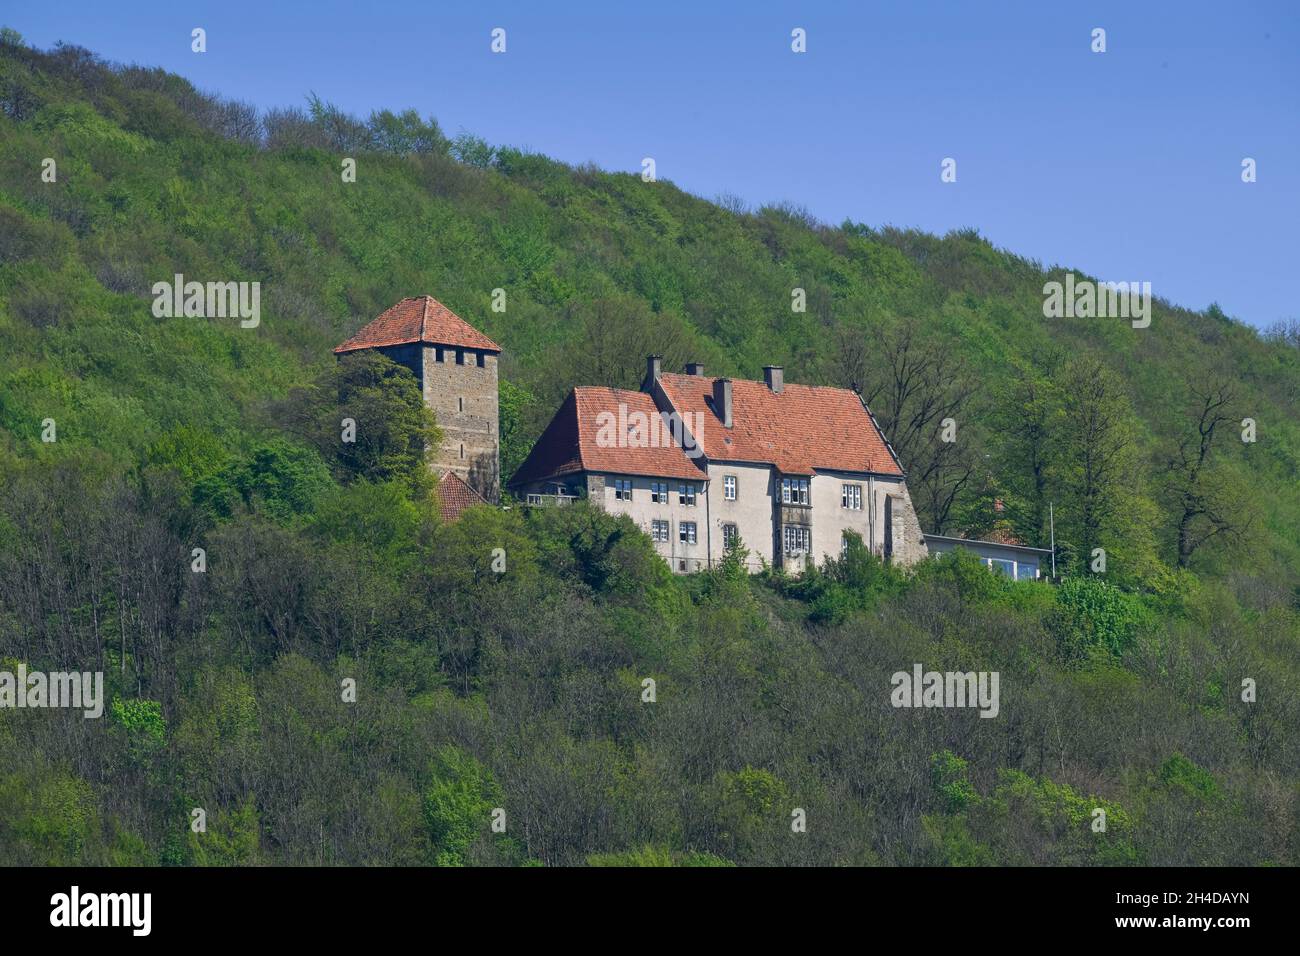 Burg Schaumburg, Rinteln, Weserbergland, Niedersachsen, Deutschland Banque D'Images